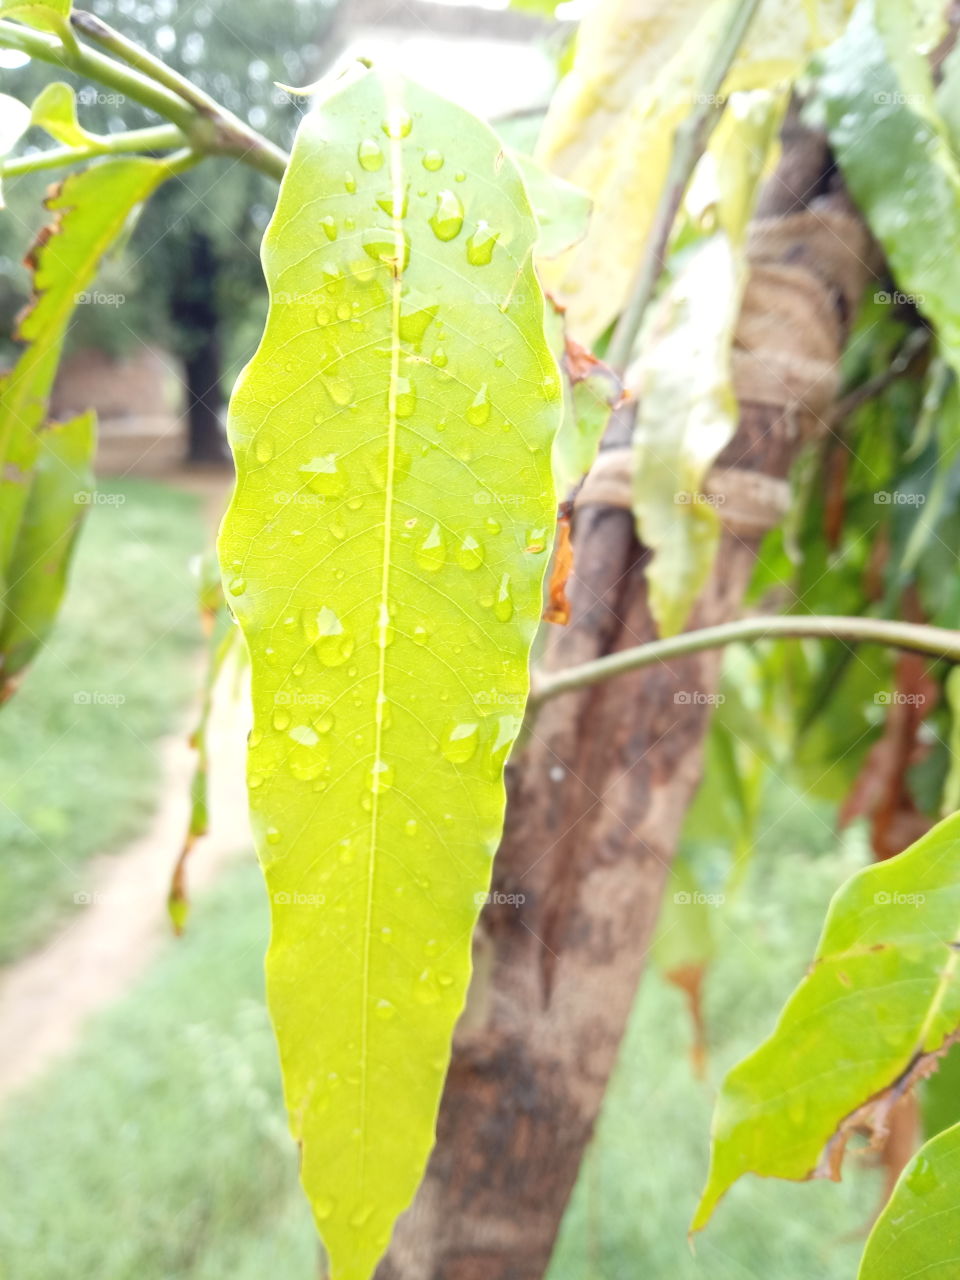 drops at a leaf